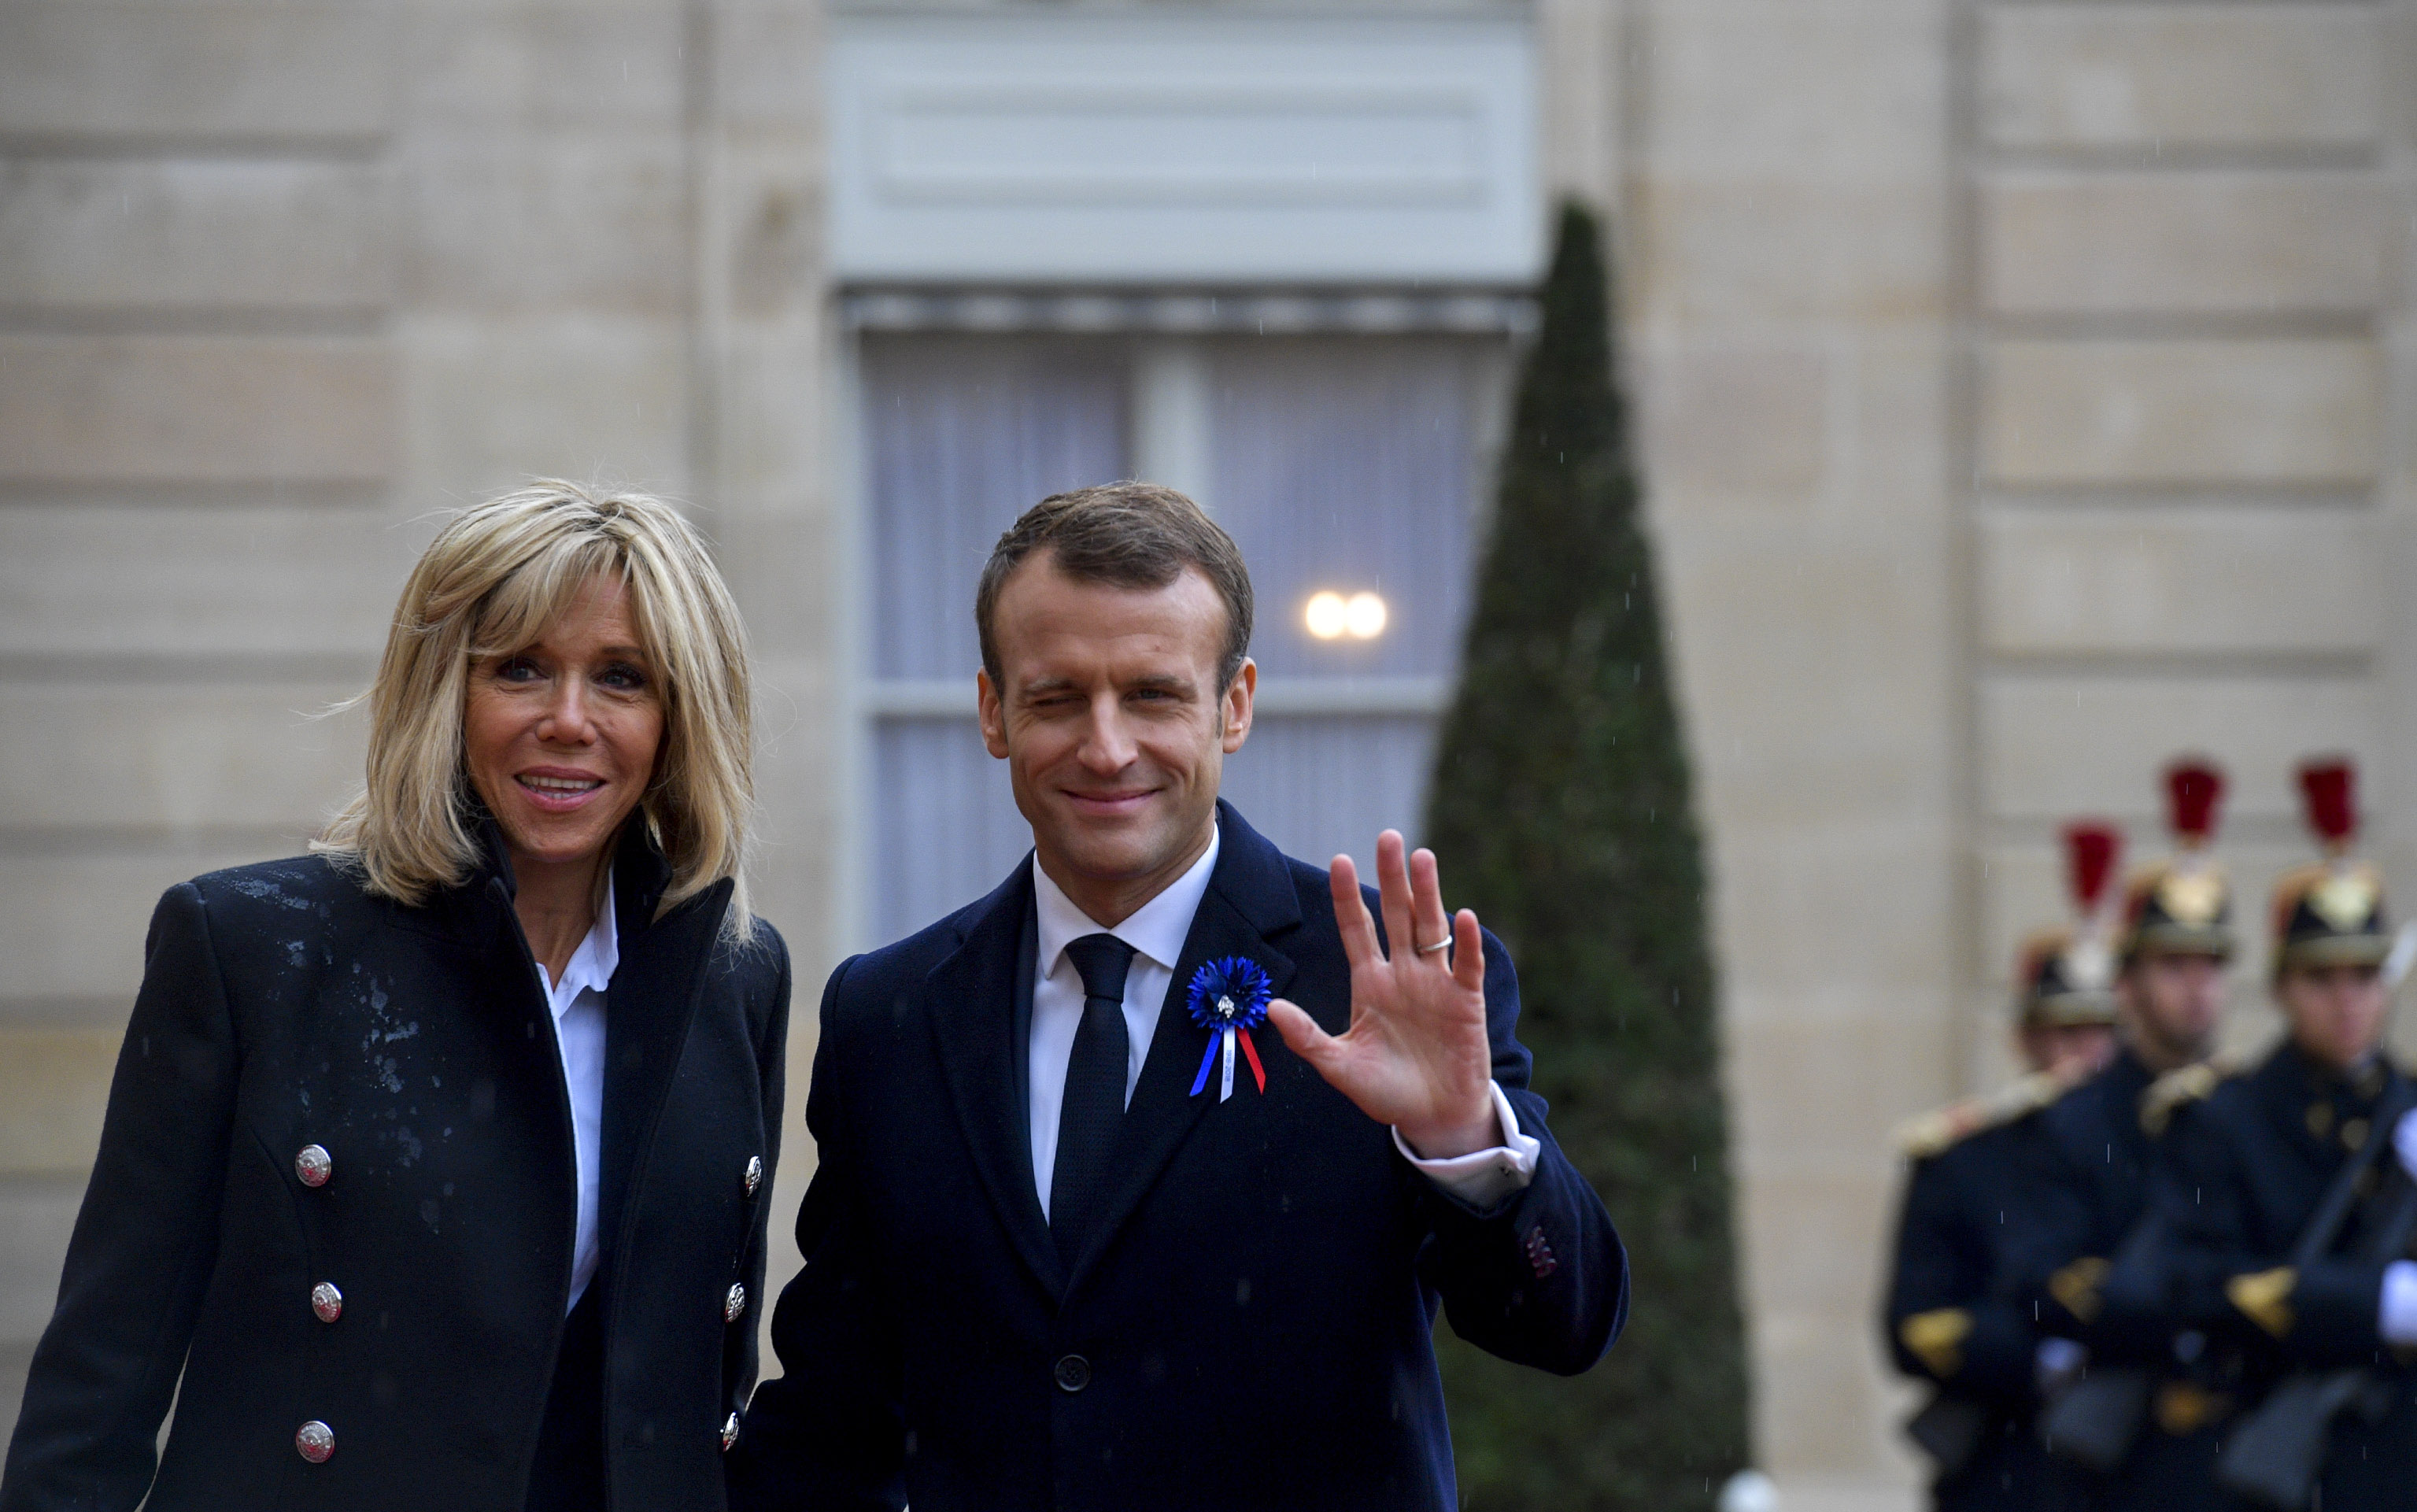 Šiandien į Lietuvą atvyksta Prancūzijos Prezidentas su pirmąja šalies ponia